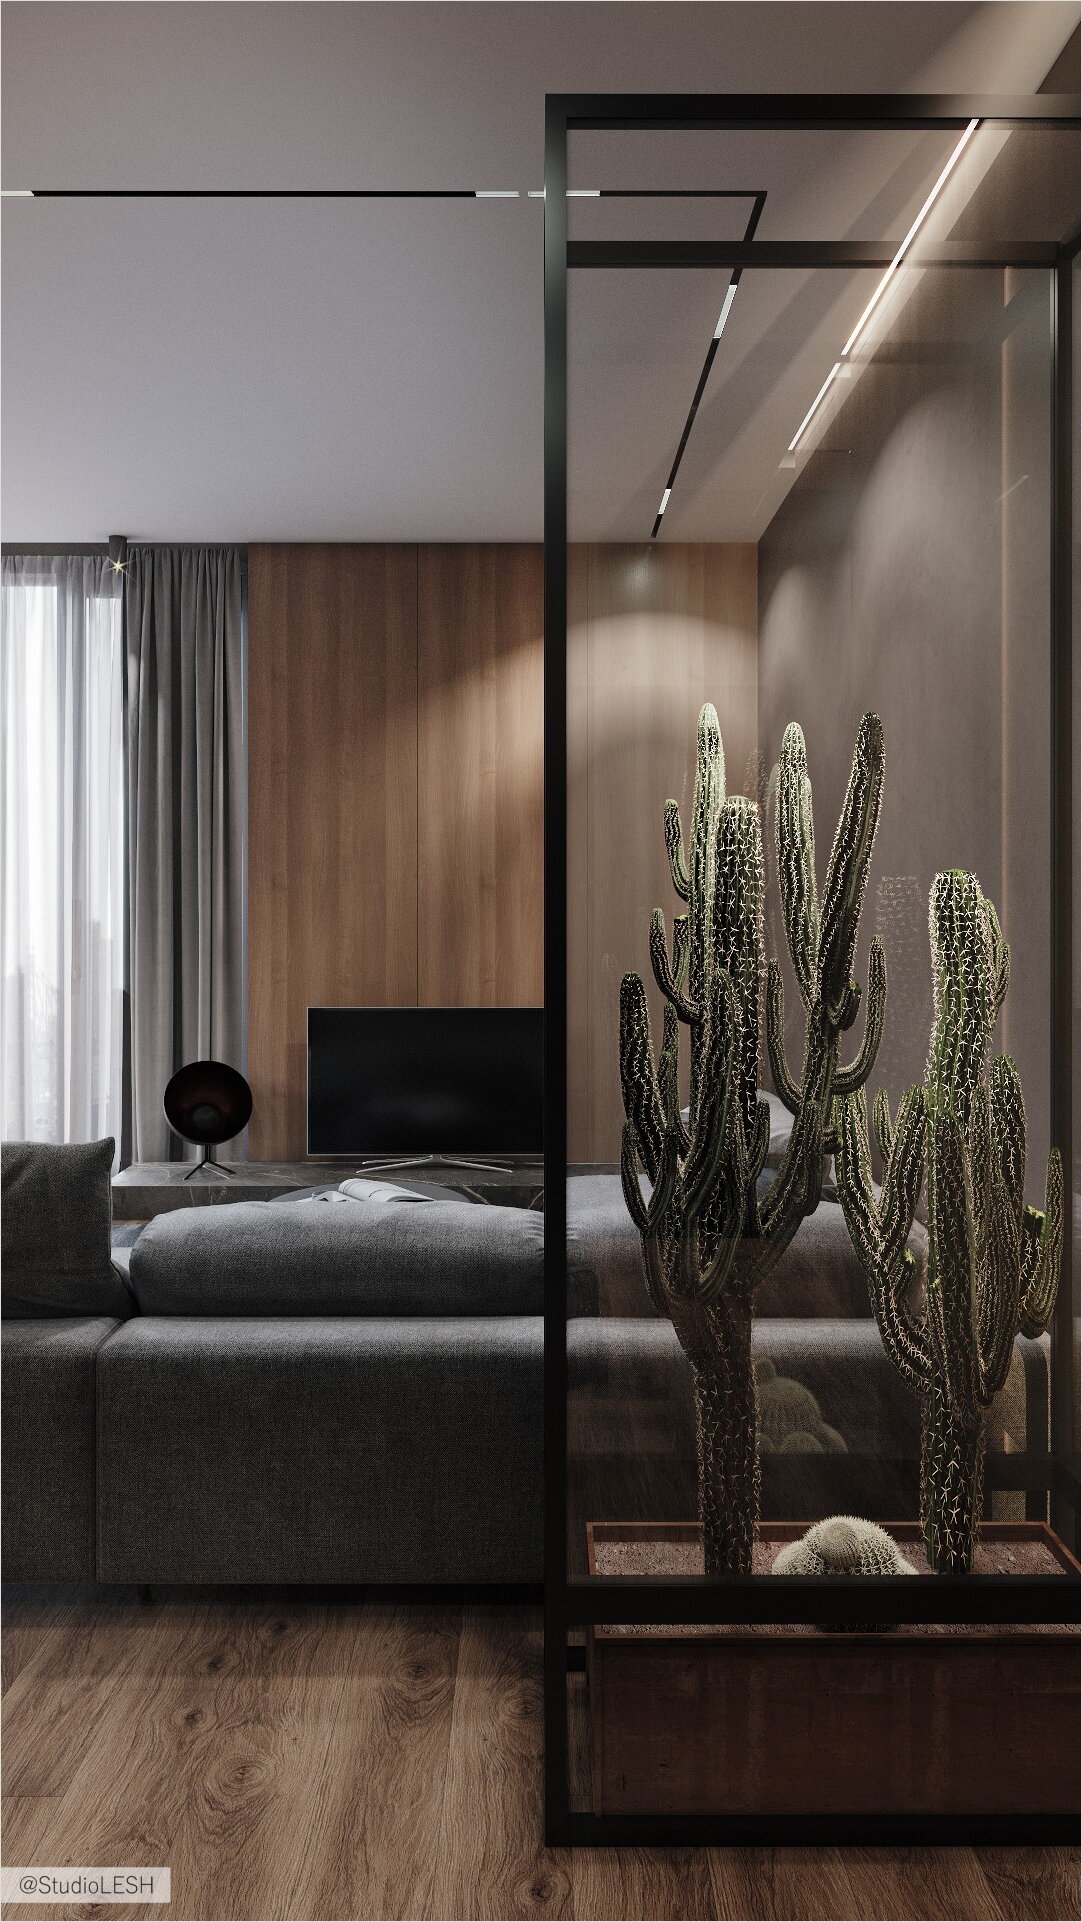 Large cactus terrarium in the interior of the living room